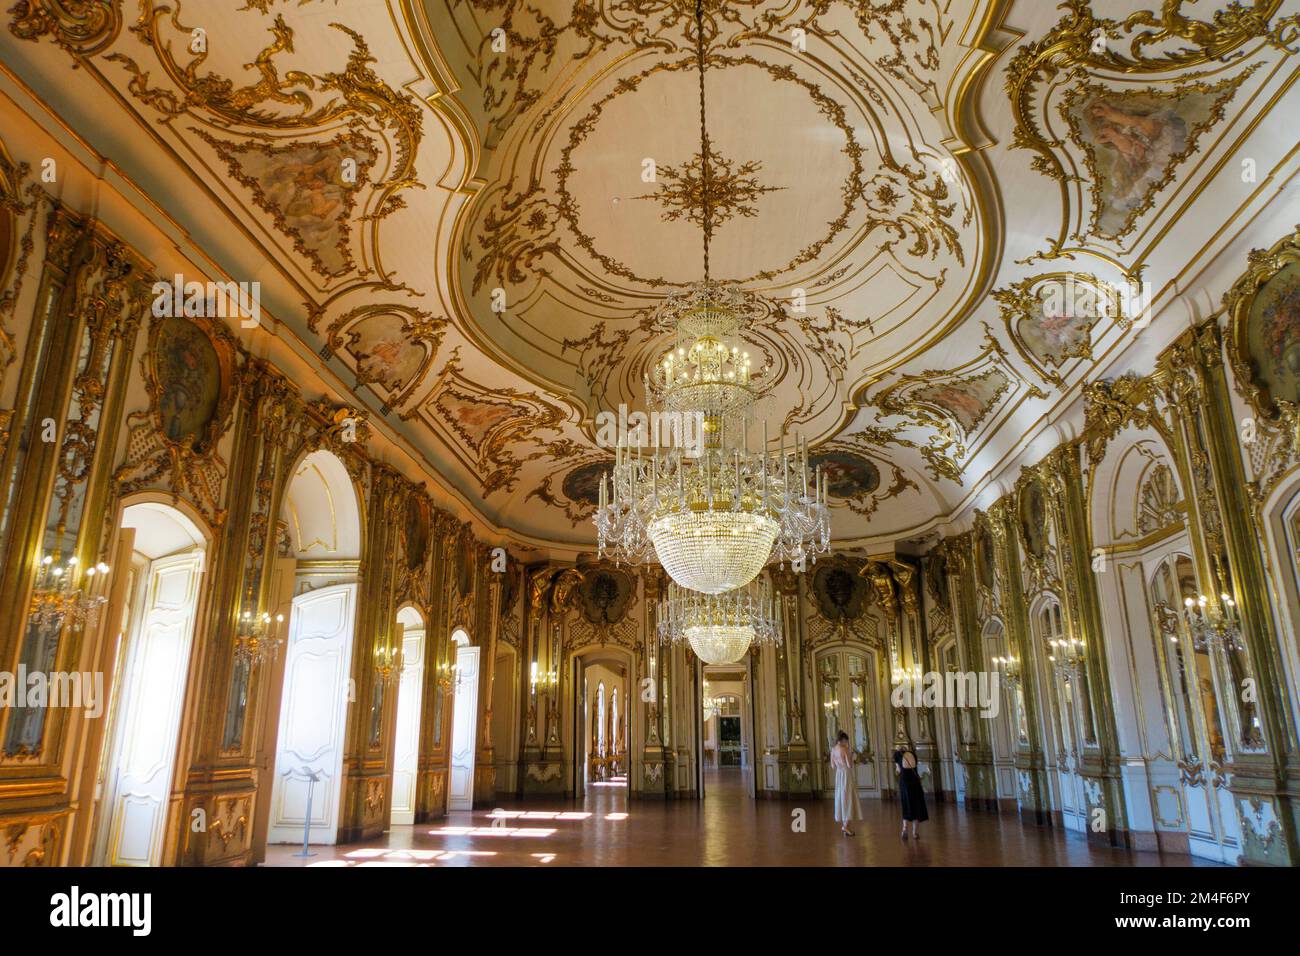 Ballroom at the at the Palace of Queluz - Palácio Nacional de Queluz - Portugal, Europe Stock Photo